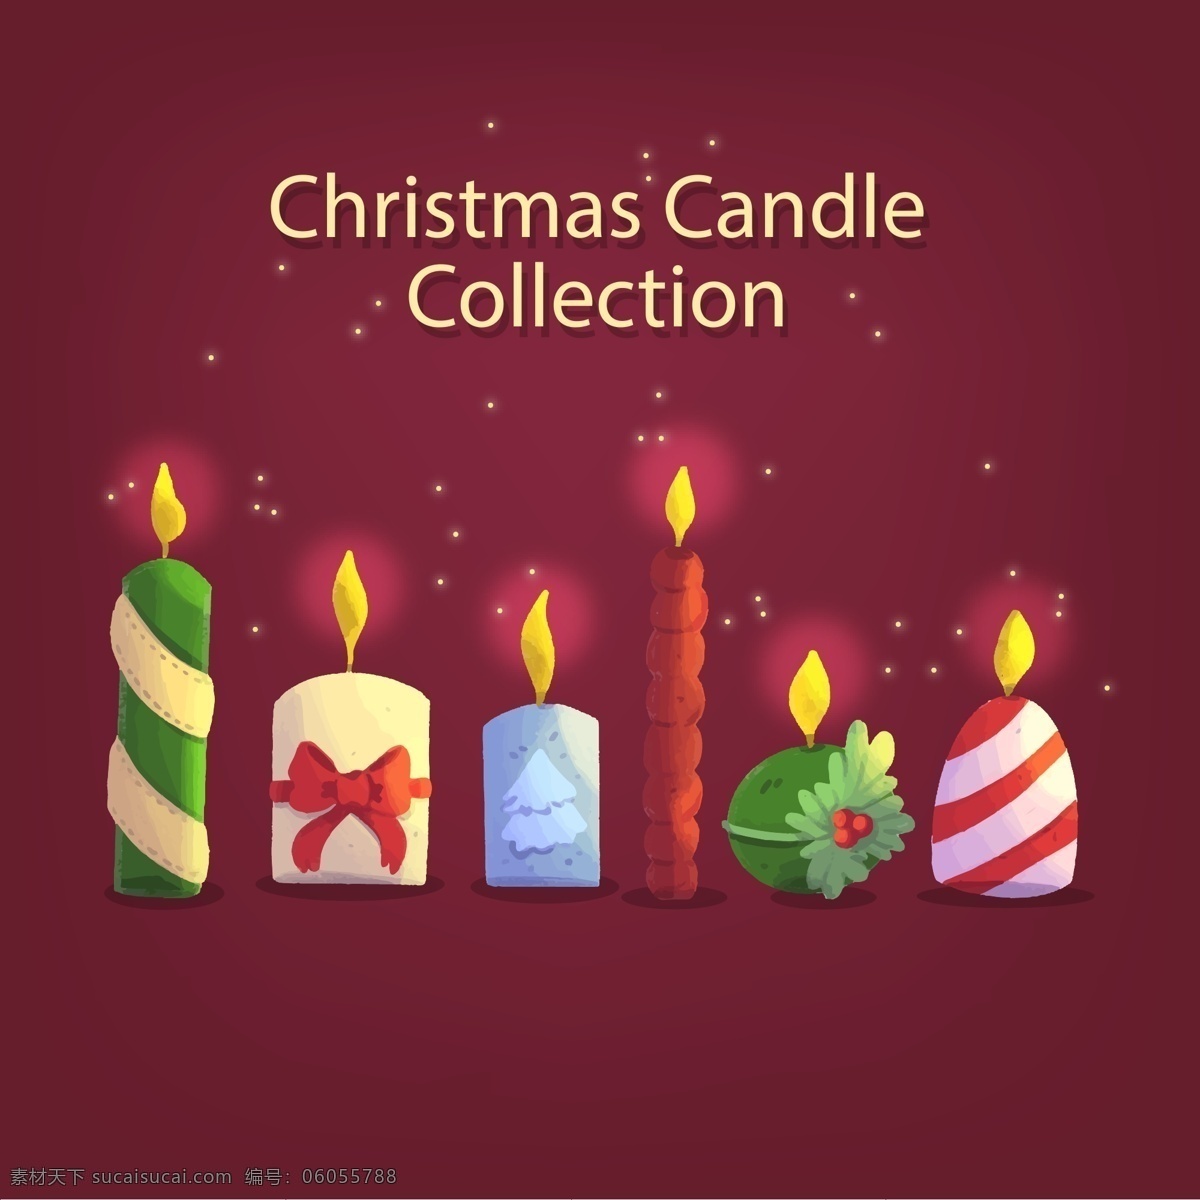 手绘 圣诞 蜡烛 元素 圣诞节 节日 狂欢 扁平 卡通 手绘蜡烛 过节 庆祝 西方节日 假期 矢量